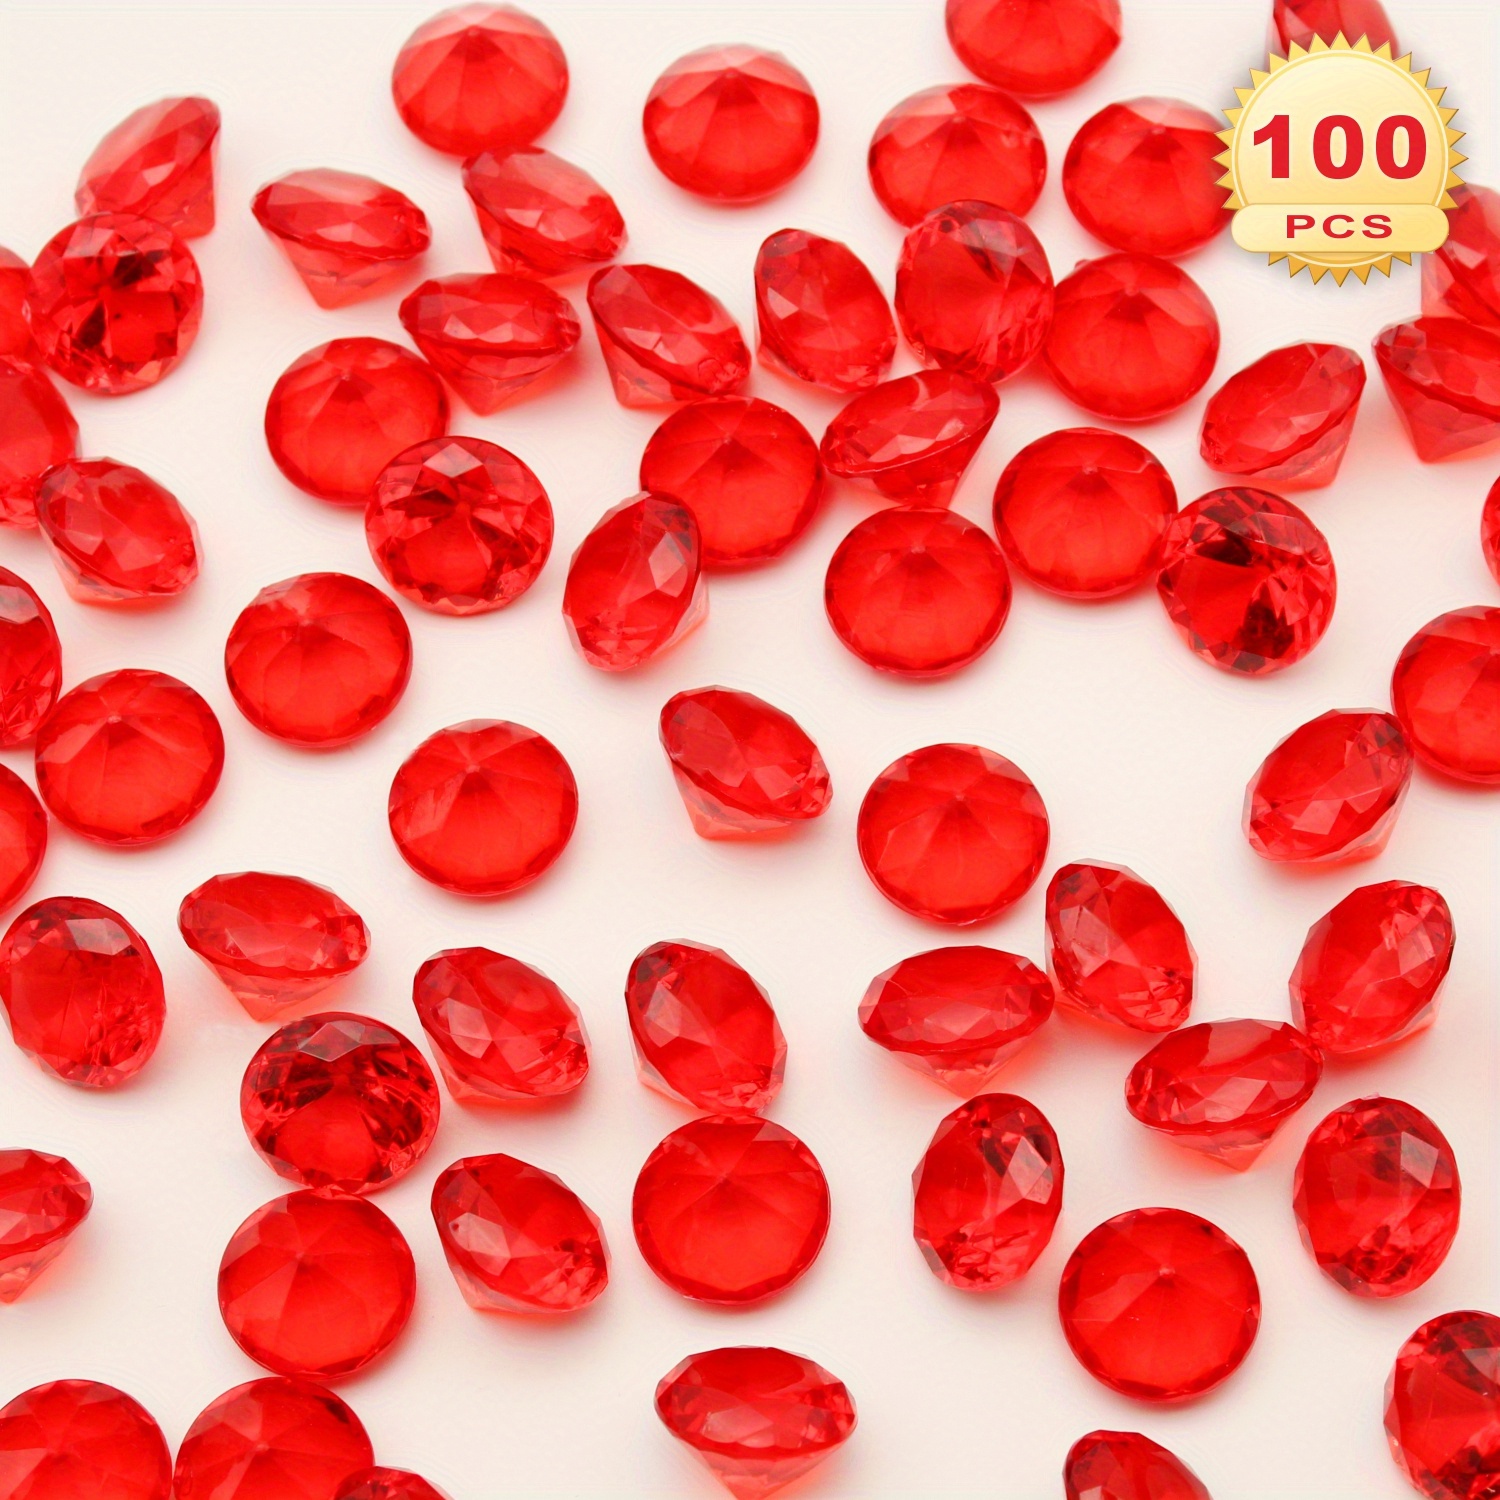 Perles rondes facettées 2 mm pierre gemme - Jaspe rouge x39cm - Perles & Co